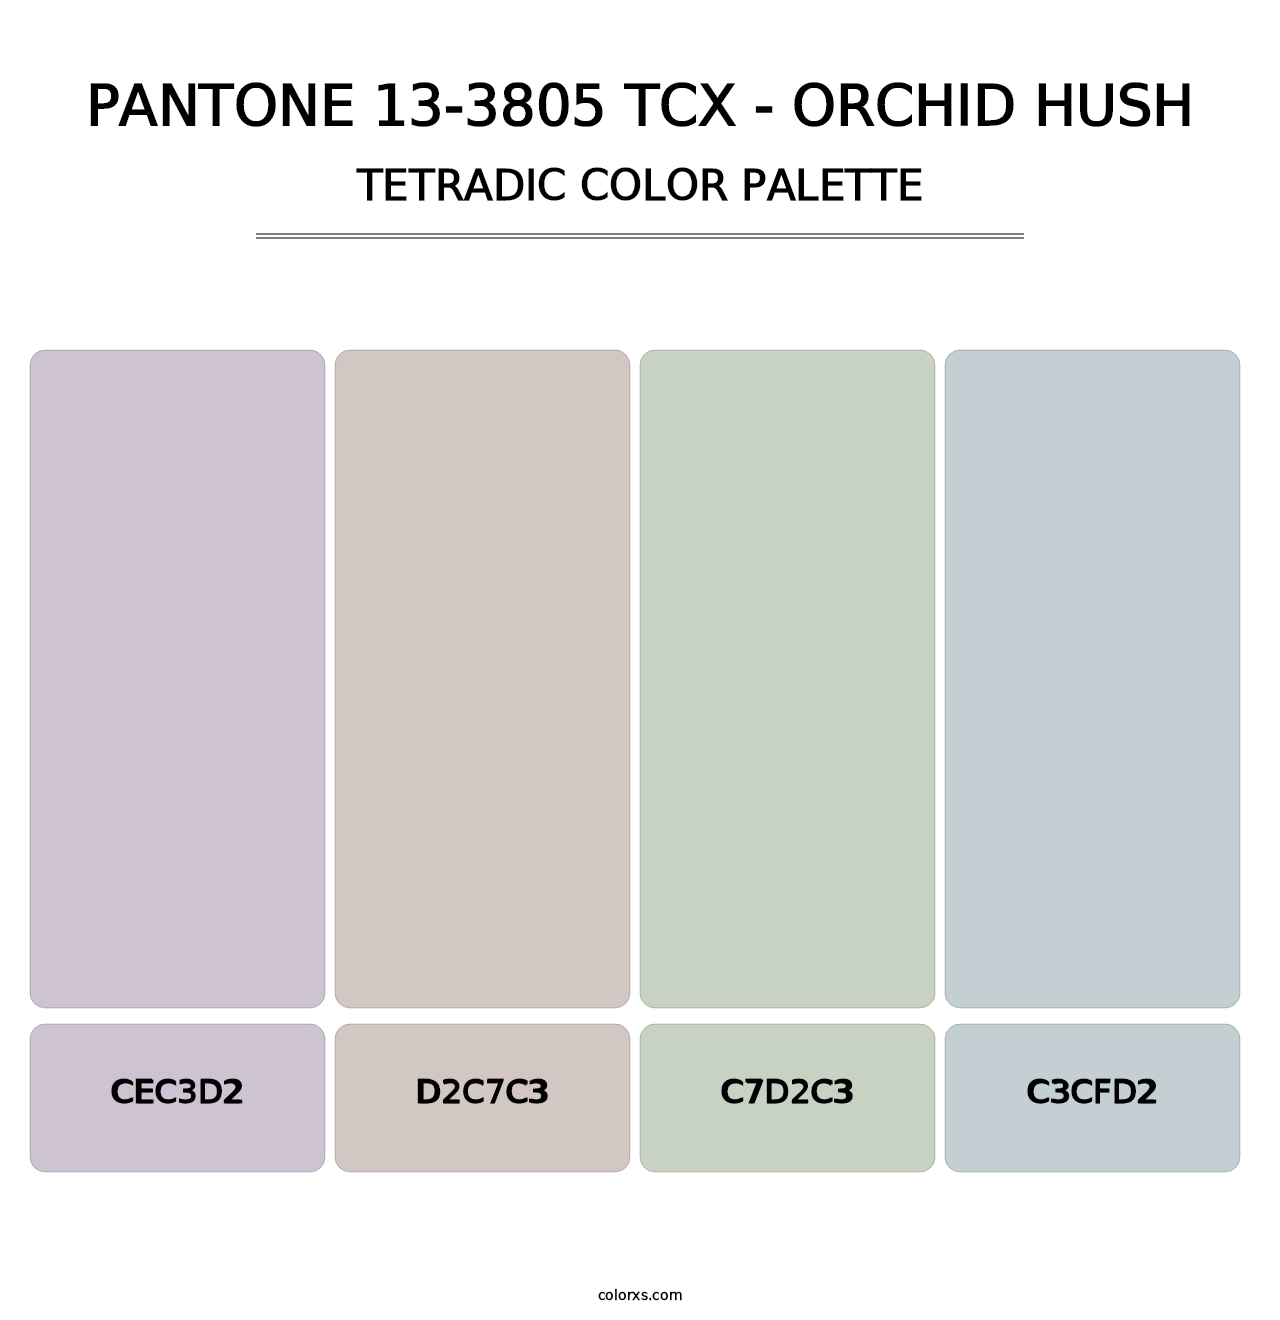 PANTONE 13-3805 TCX - Orchid Hush - Tetradic Color Palette